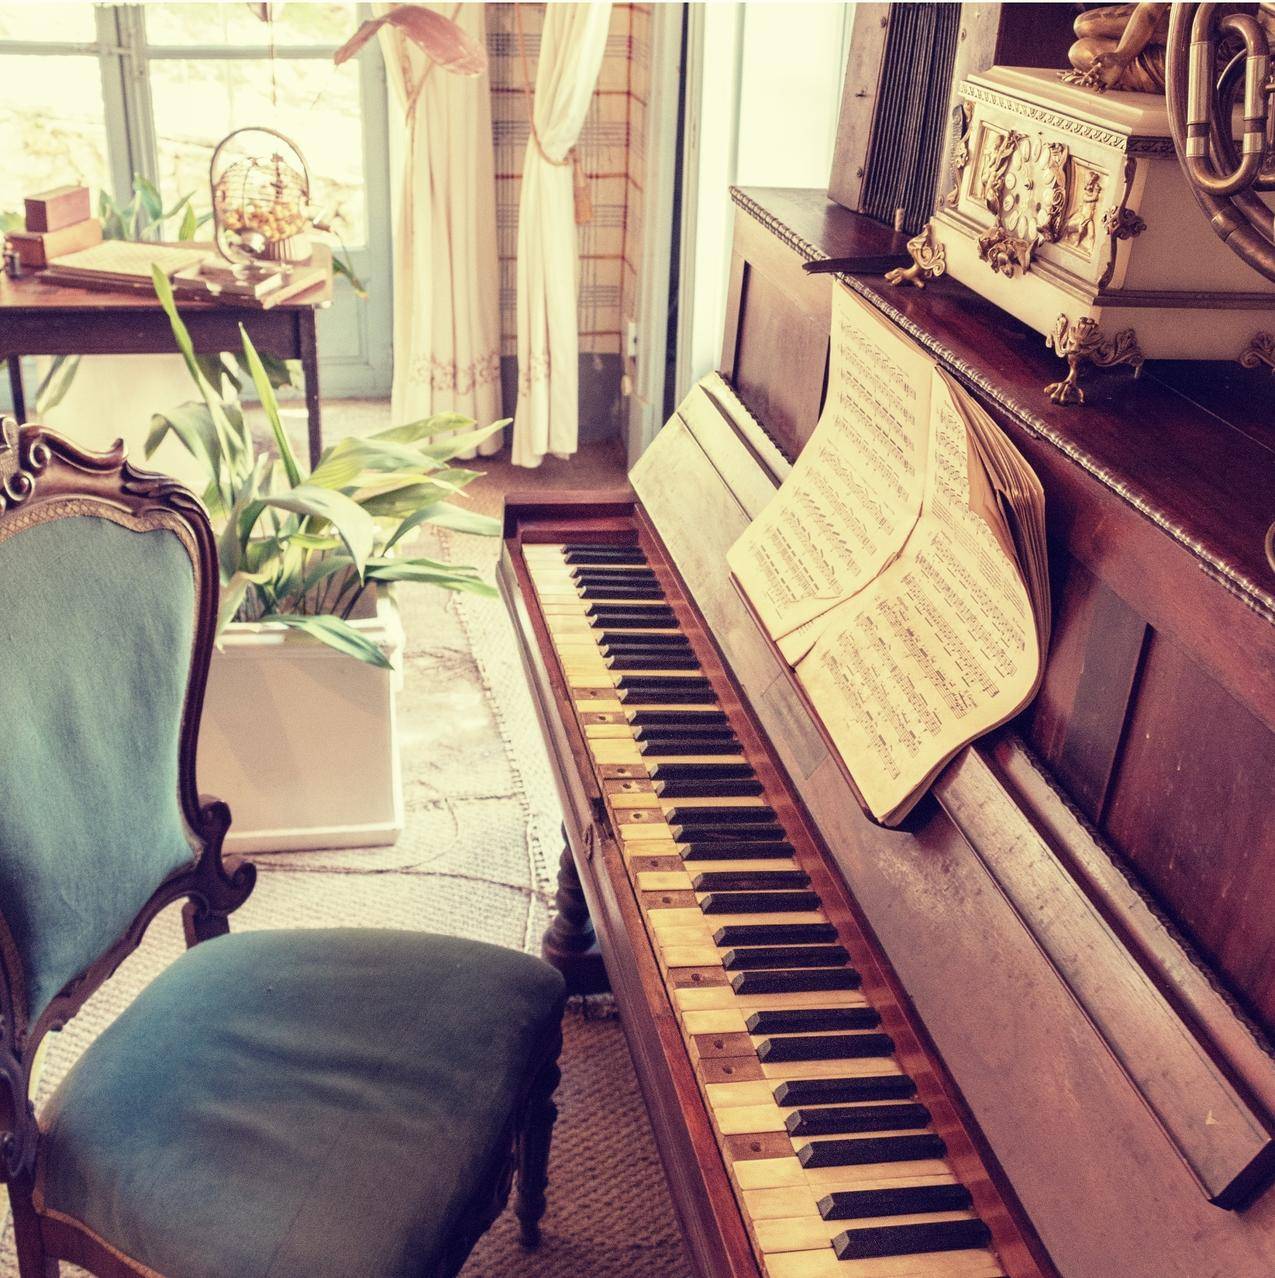 音乐,钢琴,椅子,乐器cc0可商用图片